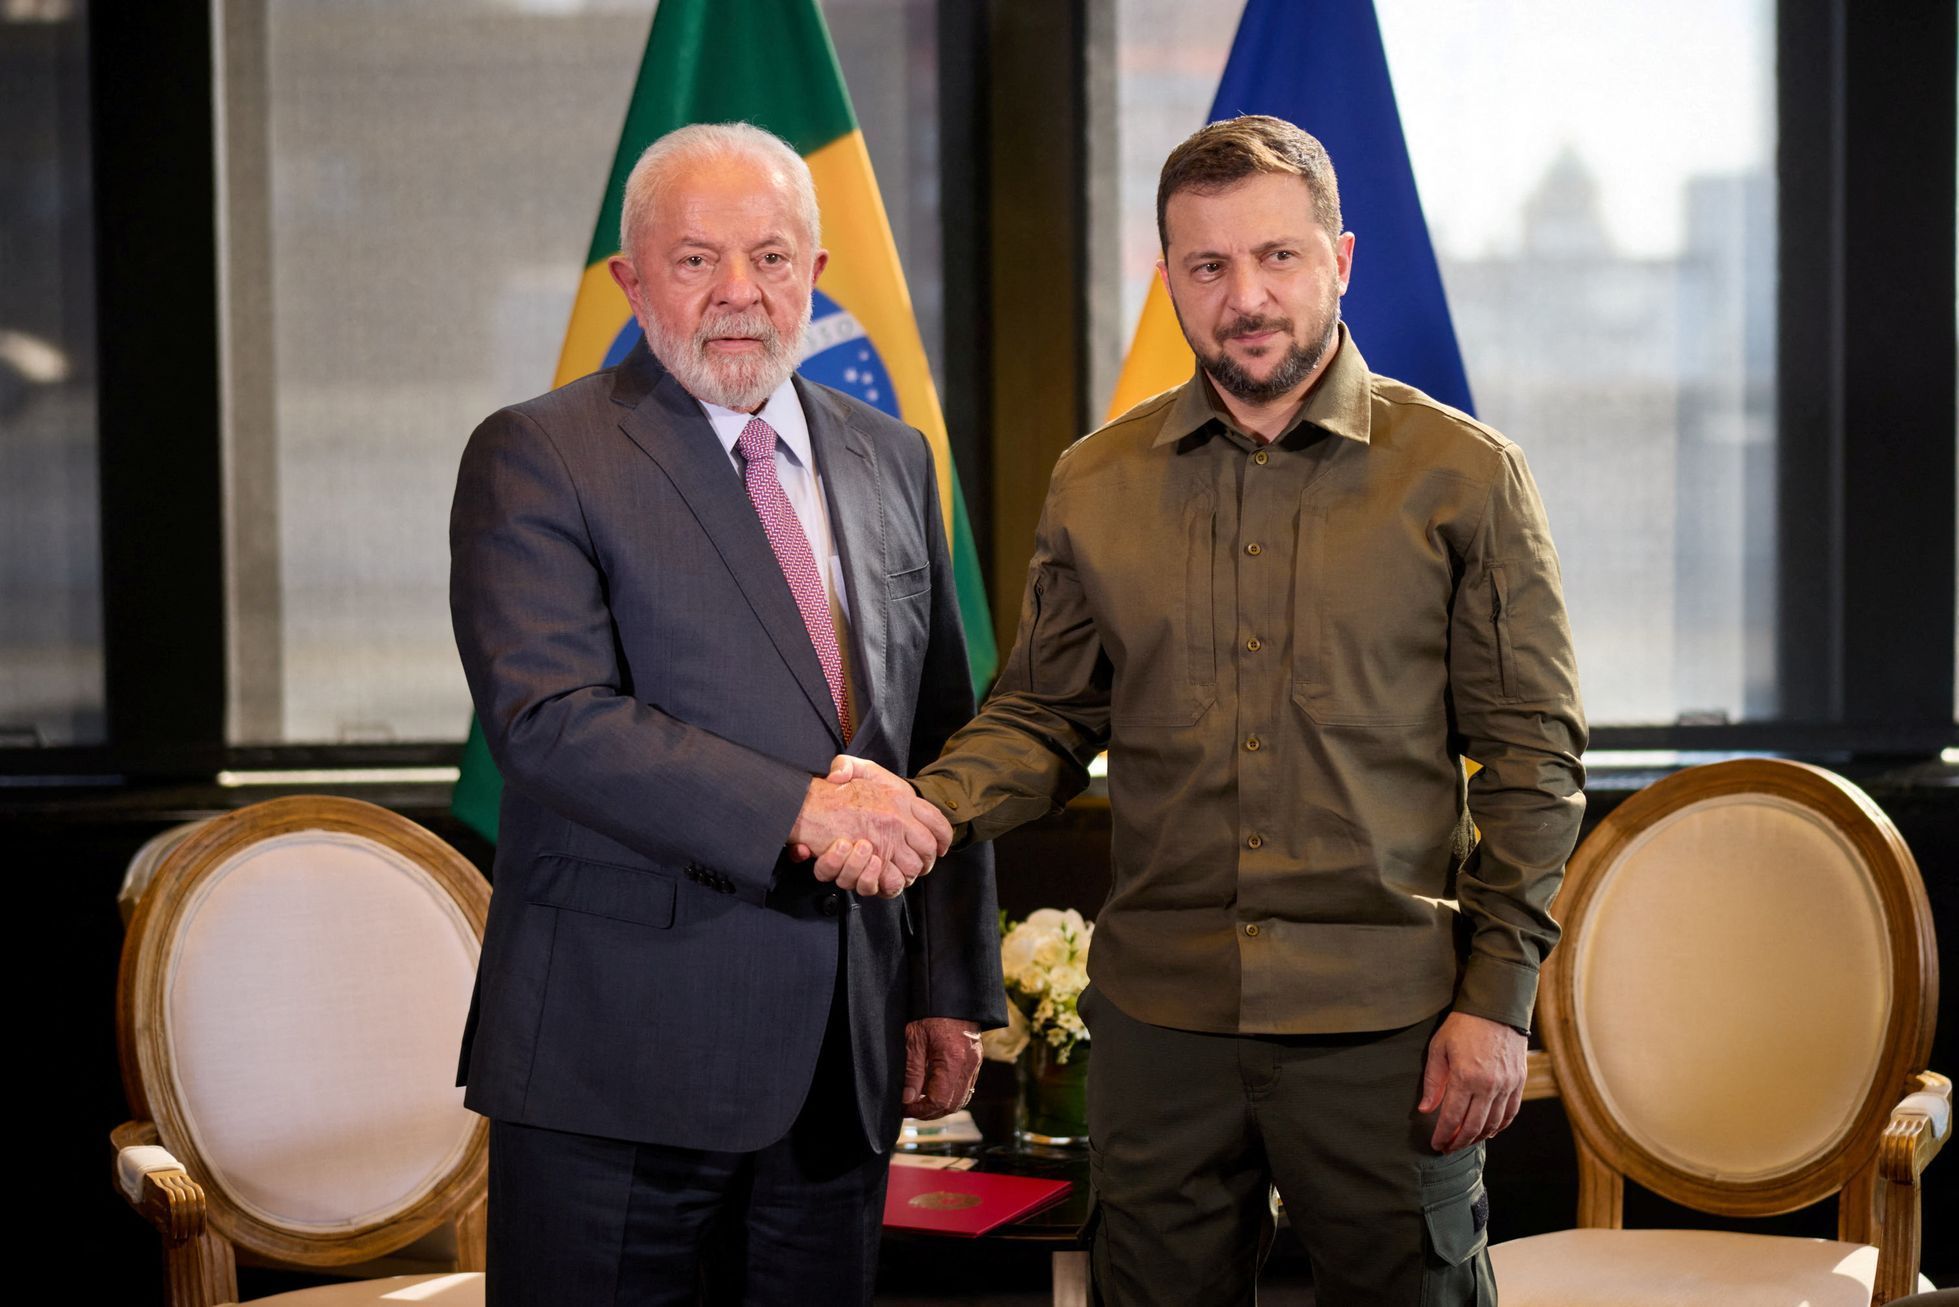 Ukrajinský prezident Volodymyr Zelenskyj se sešel v OSN v New Yorku s brazilským prezidentem Lulou da Silvou. Ten v minulosti řekl, že se neodvažuje soudit, komu patří Krym.